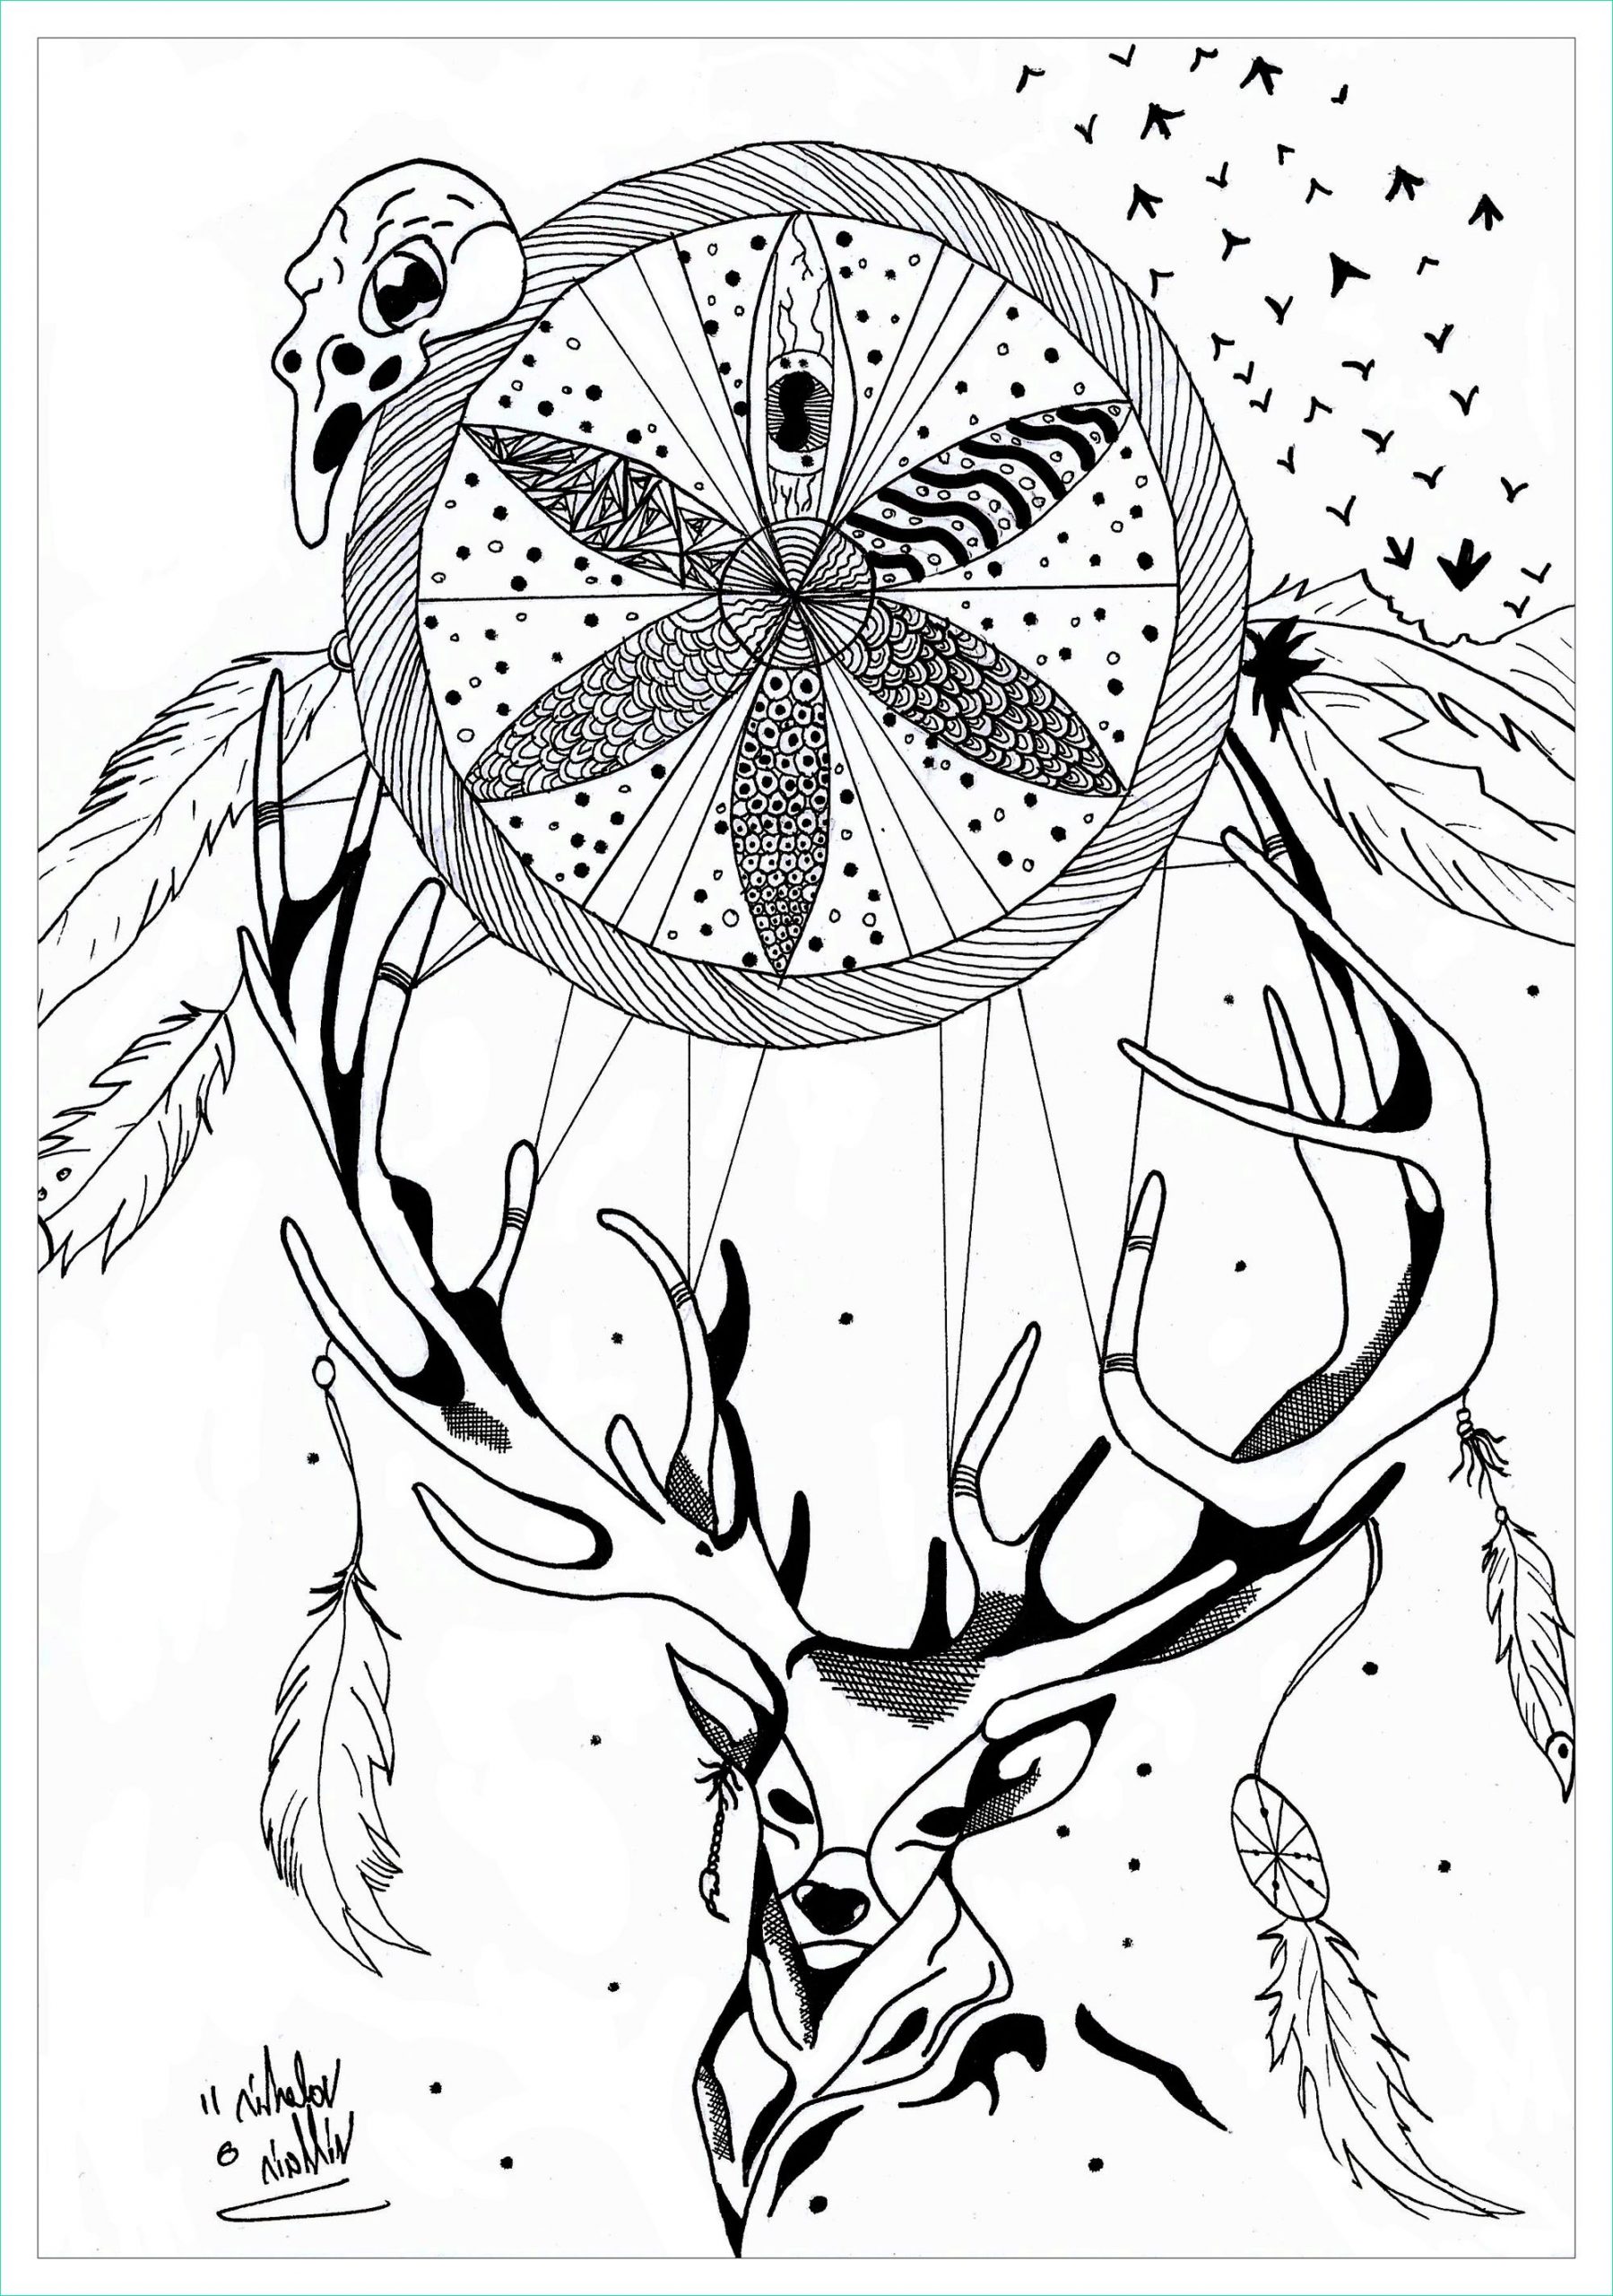 Colorige Nouveau Photos Deer Dreamcatcher Mandala Mandalas with Animals